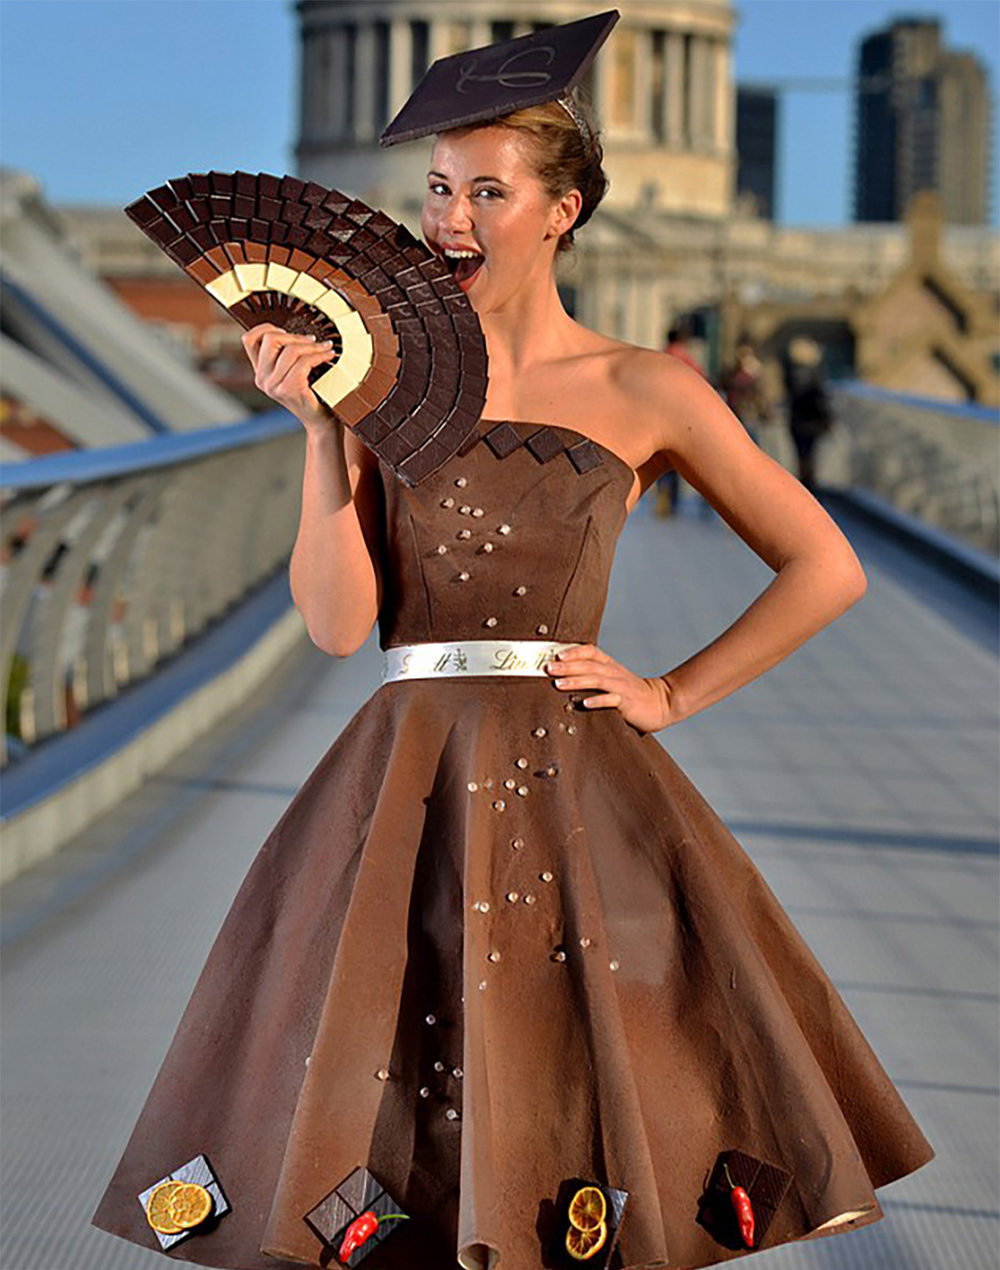 Платье, сделанное полностью из шоколада, было представлено на Национальной неделе шоколада в Великобритании